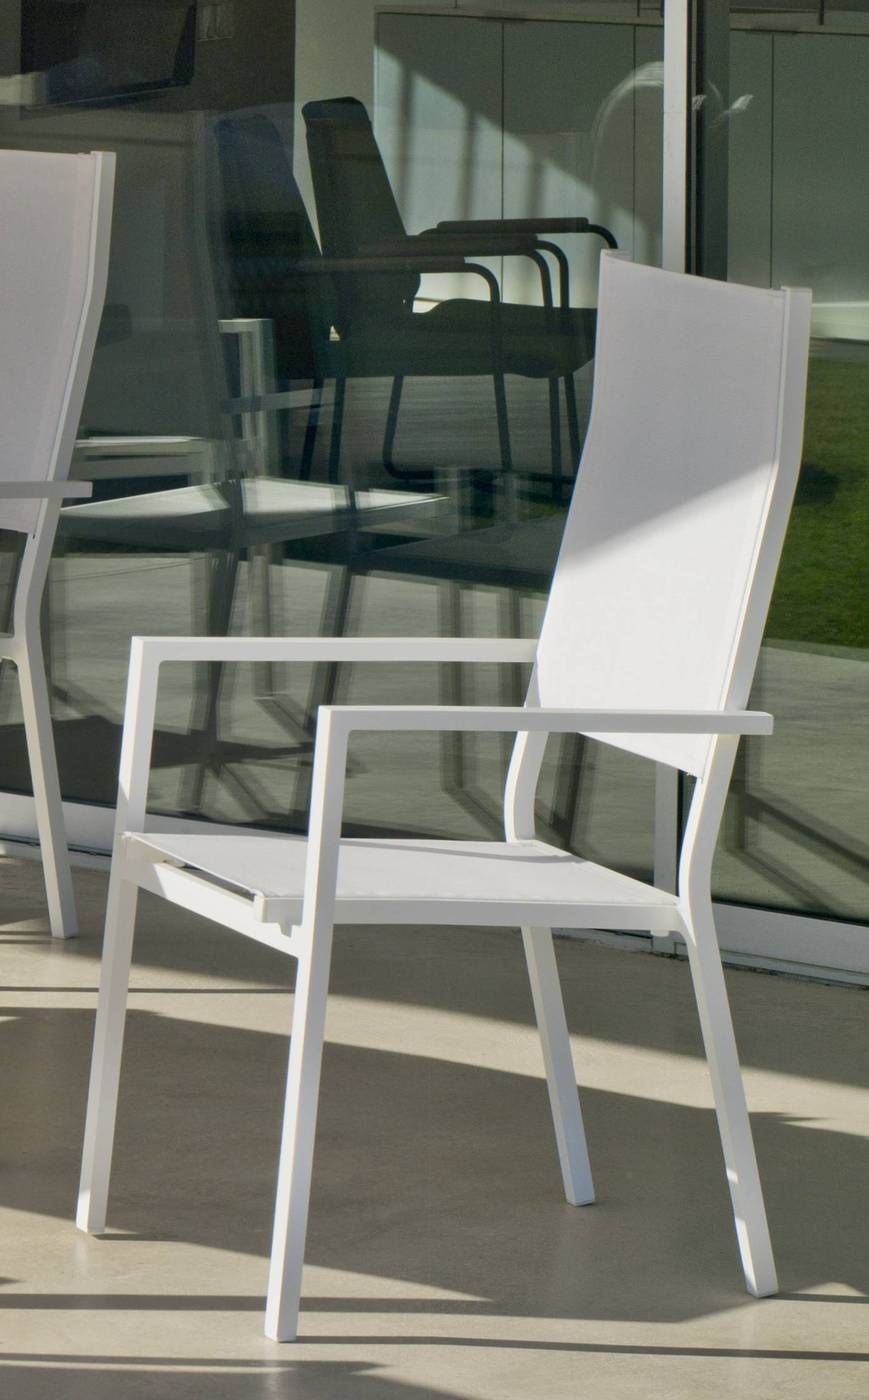 Set Palermo-160-4 Janeiro - Conjunto de aluminio para jardín: Mesa rectangular con tablero cerámico de 160 cm + 4 sillones altos de textilen. Colores: blanco y antracita.